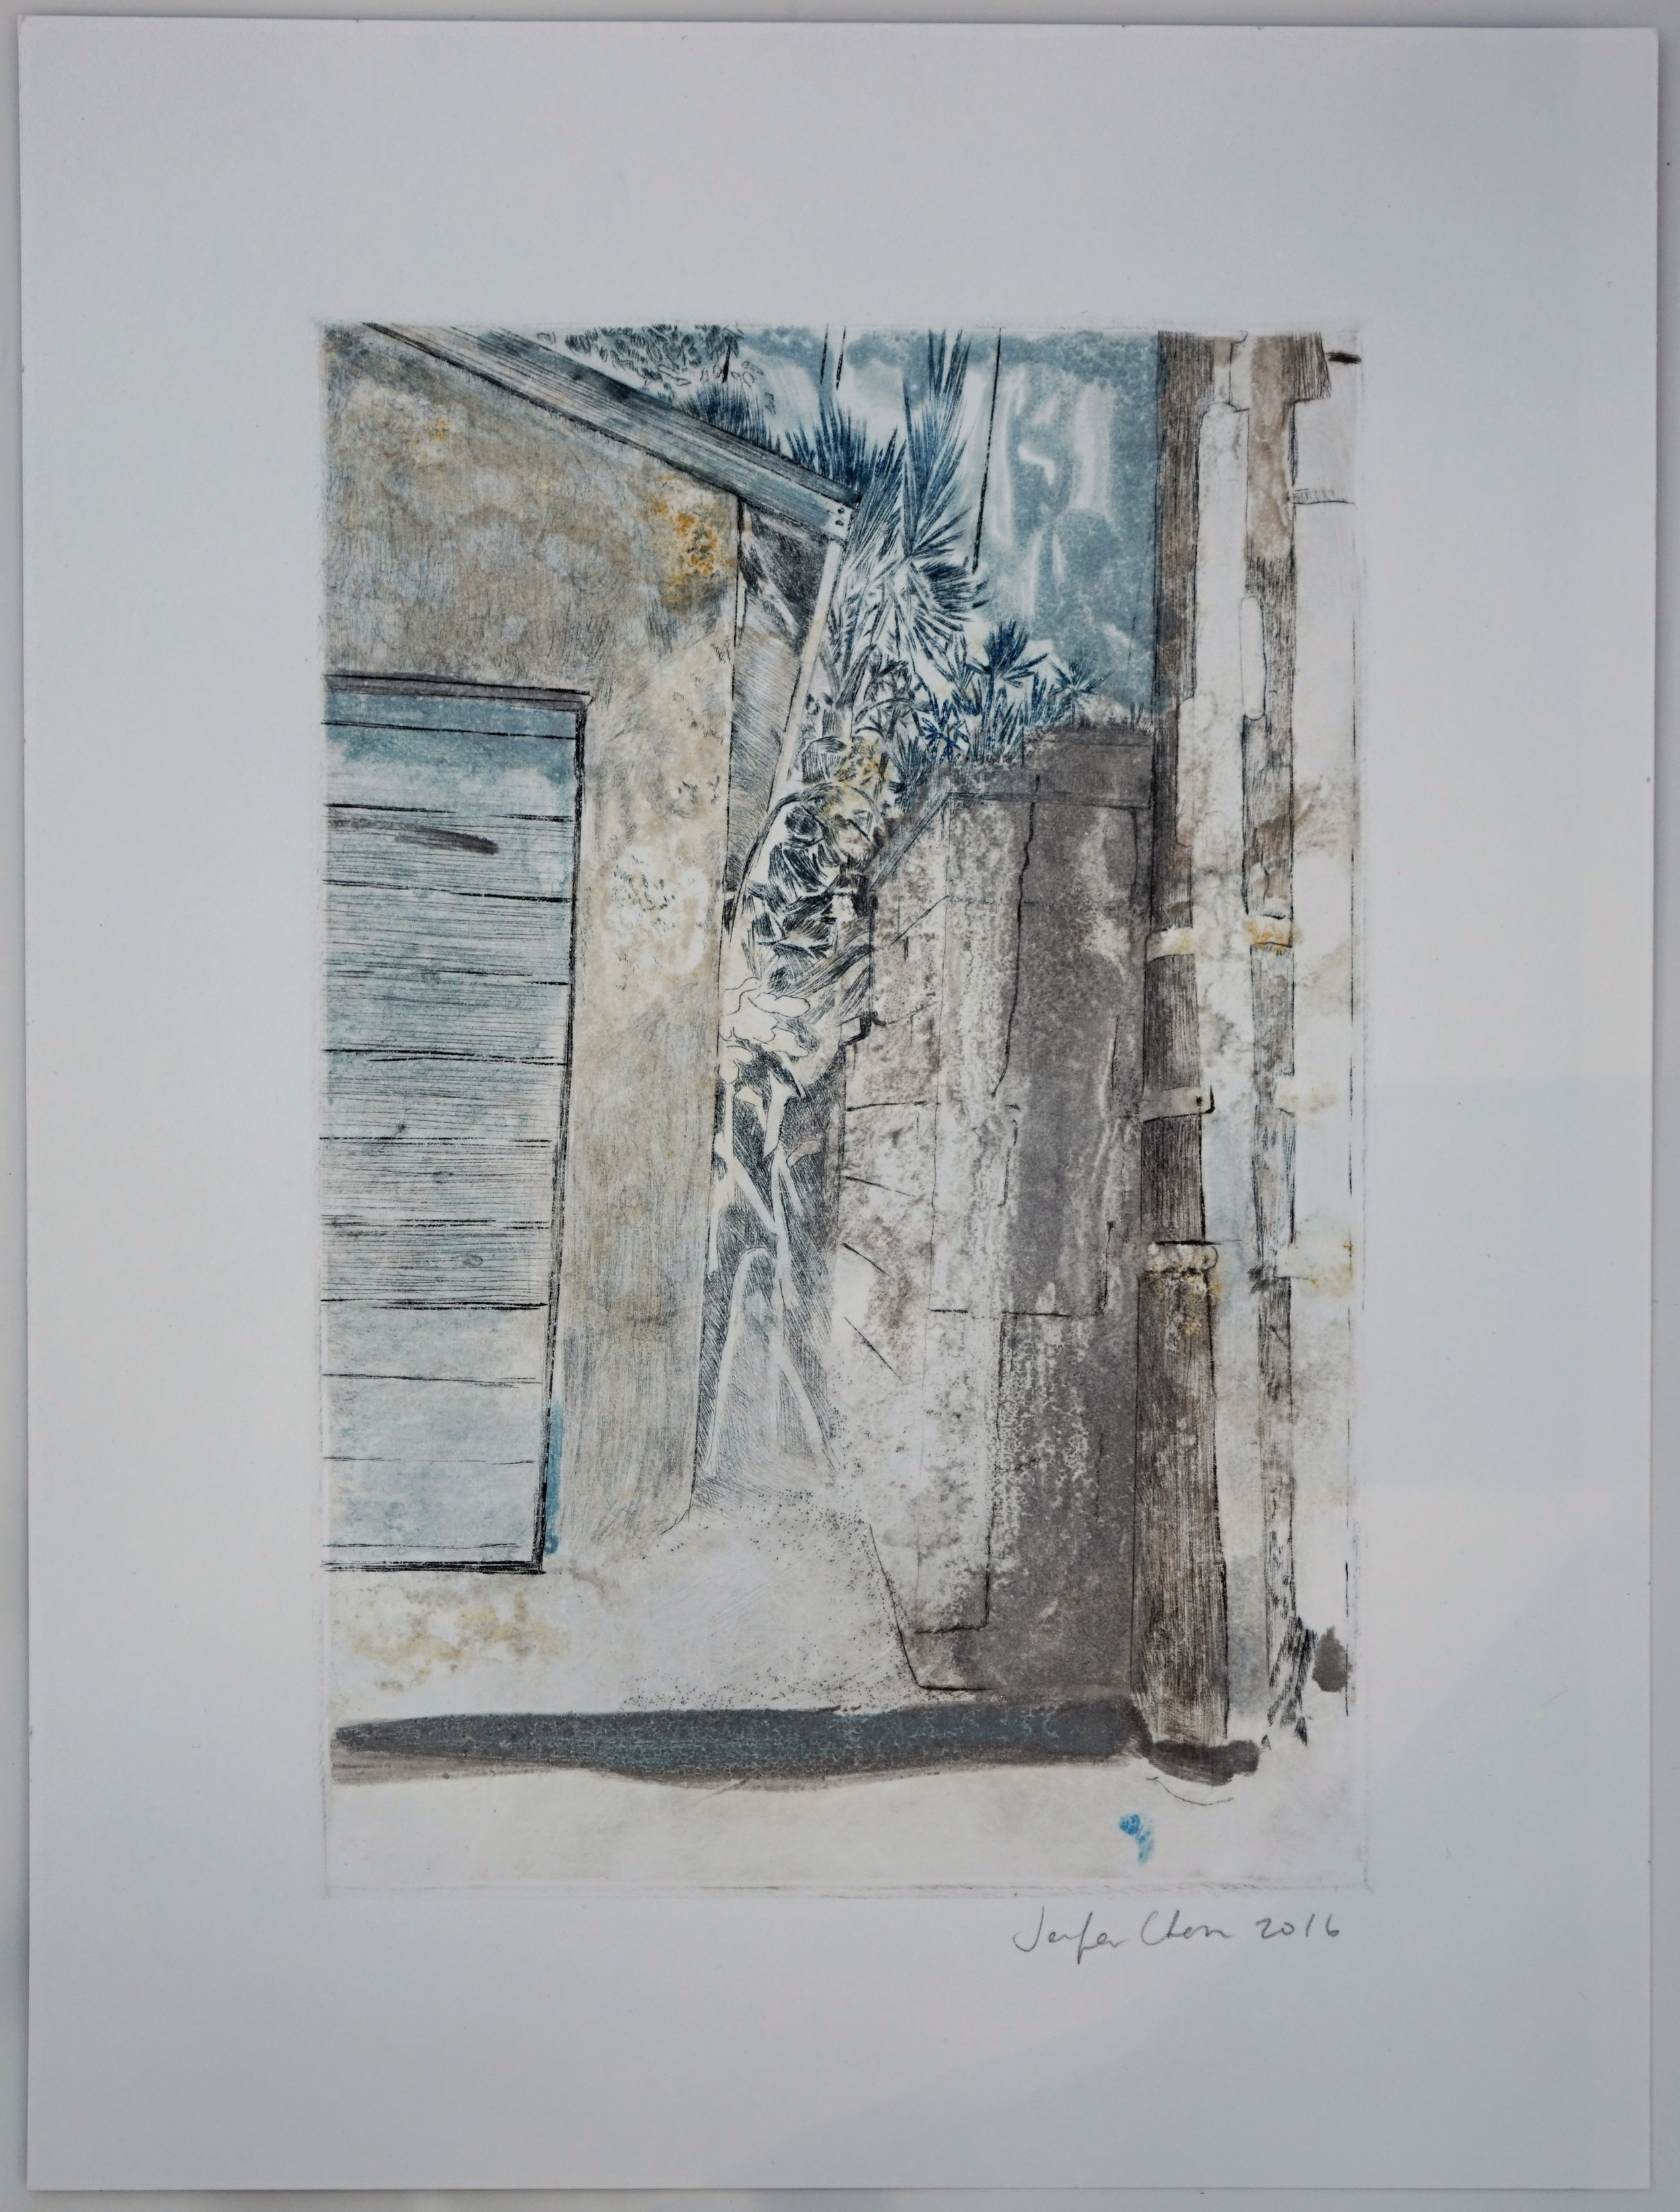    Untitled   (34.0-118.1;2014_90640, W. Beverly Blvd), 2016  Intaglio (drypoint), Monoprint, 12x9 in. 